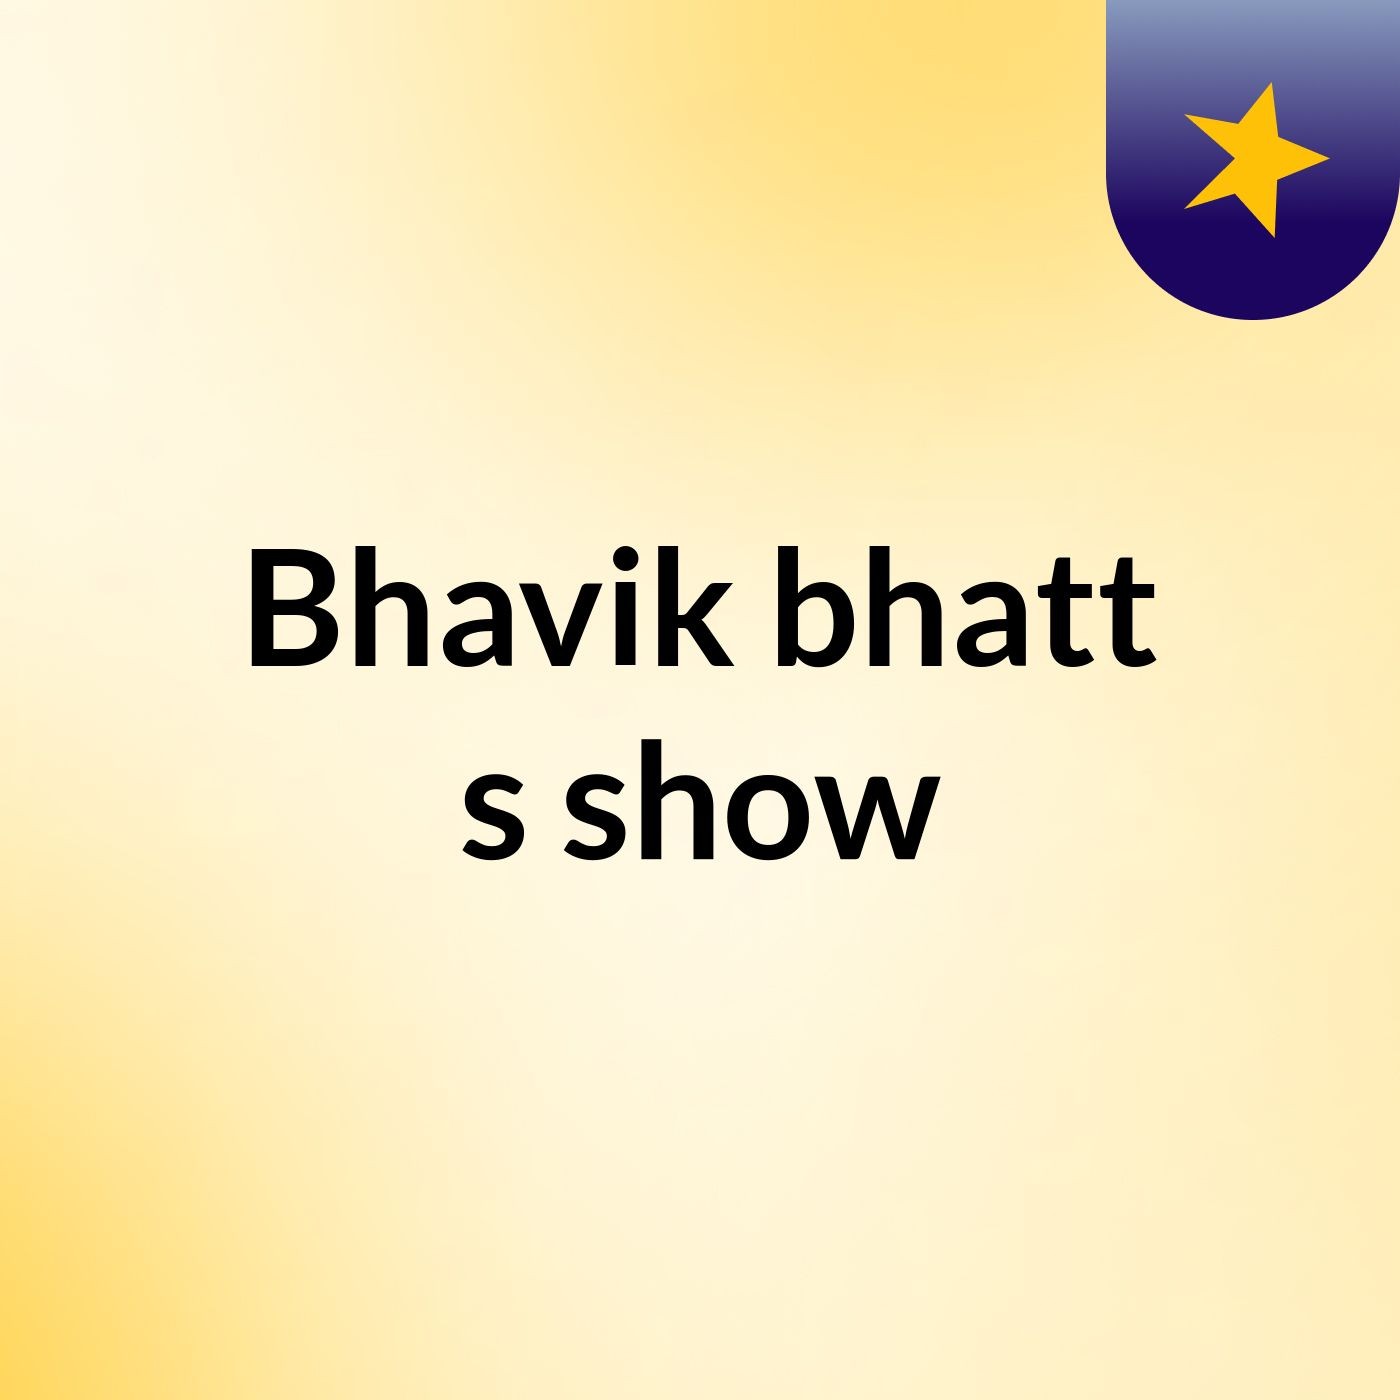 Episode 2 - Bhavik bhatt's show